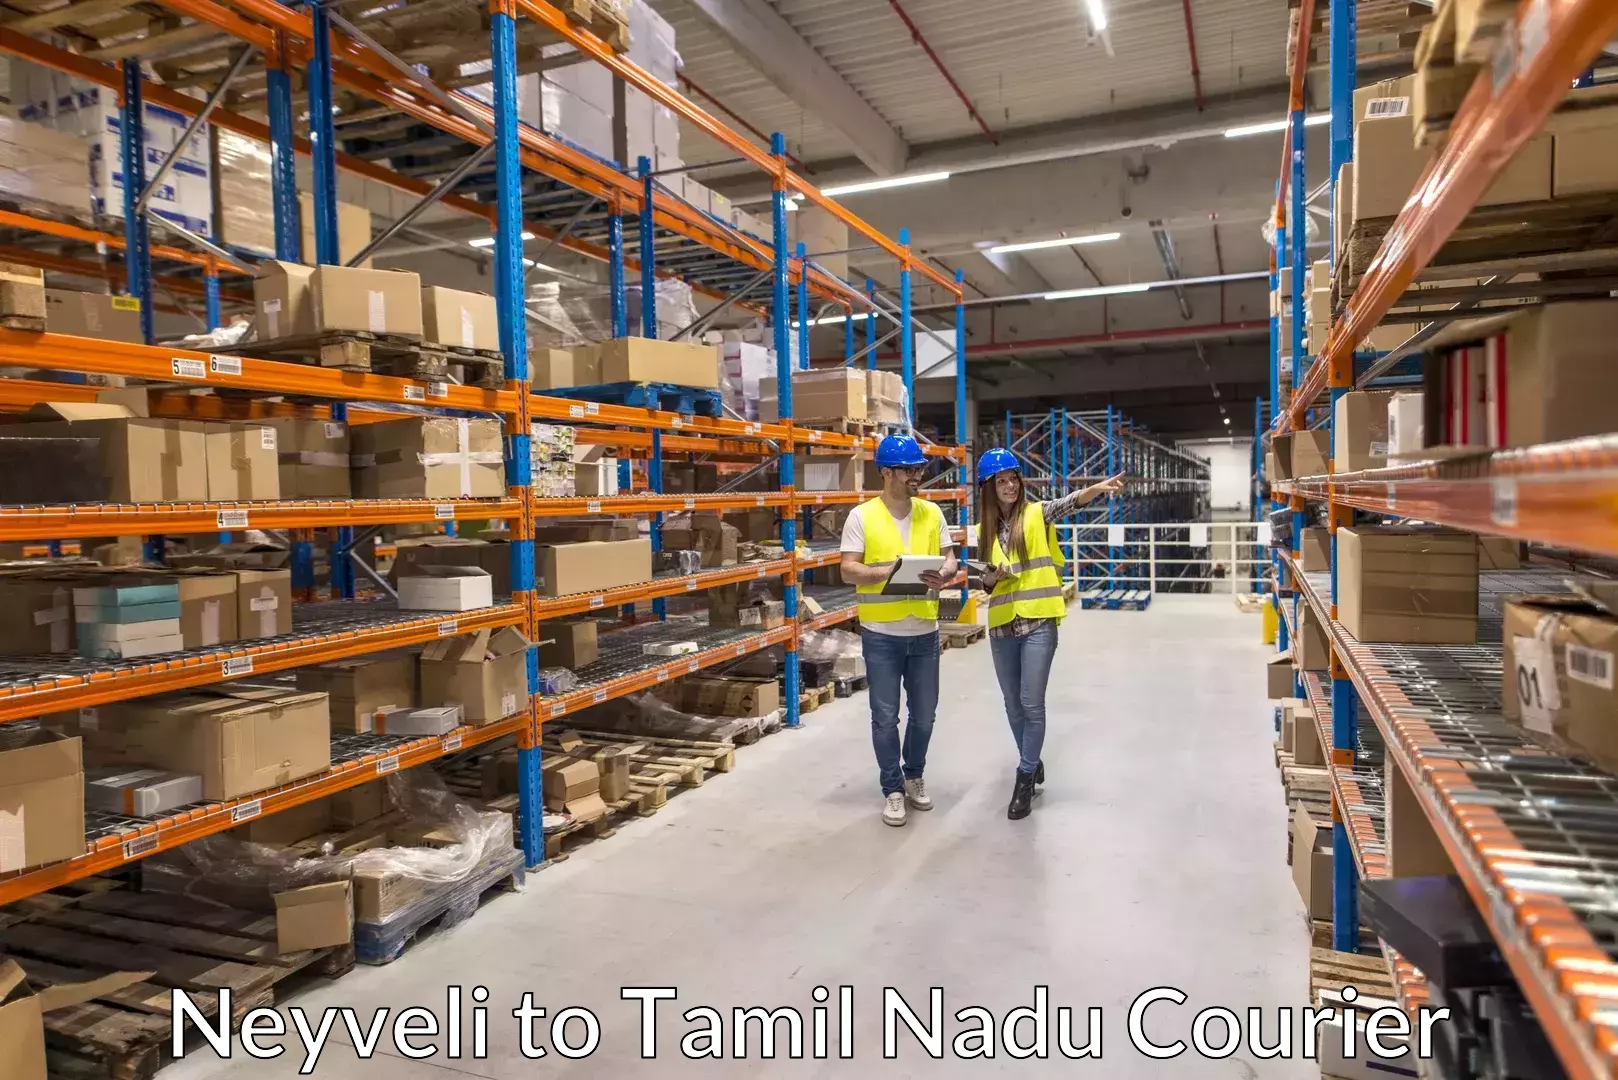 Baggage transport scheduler Neyveli to Tamil Nadu